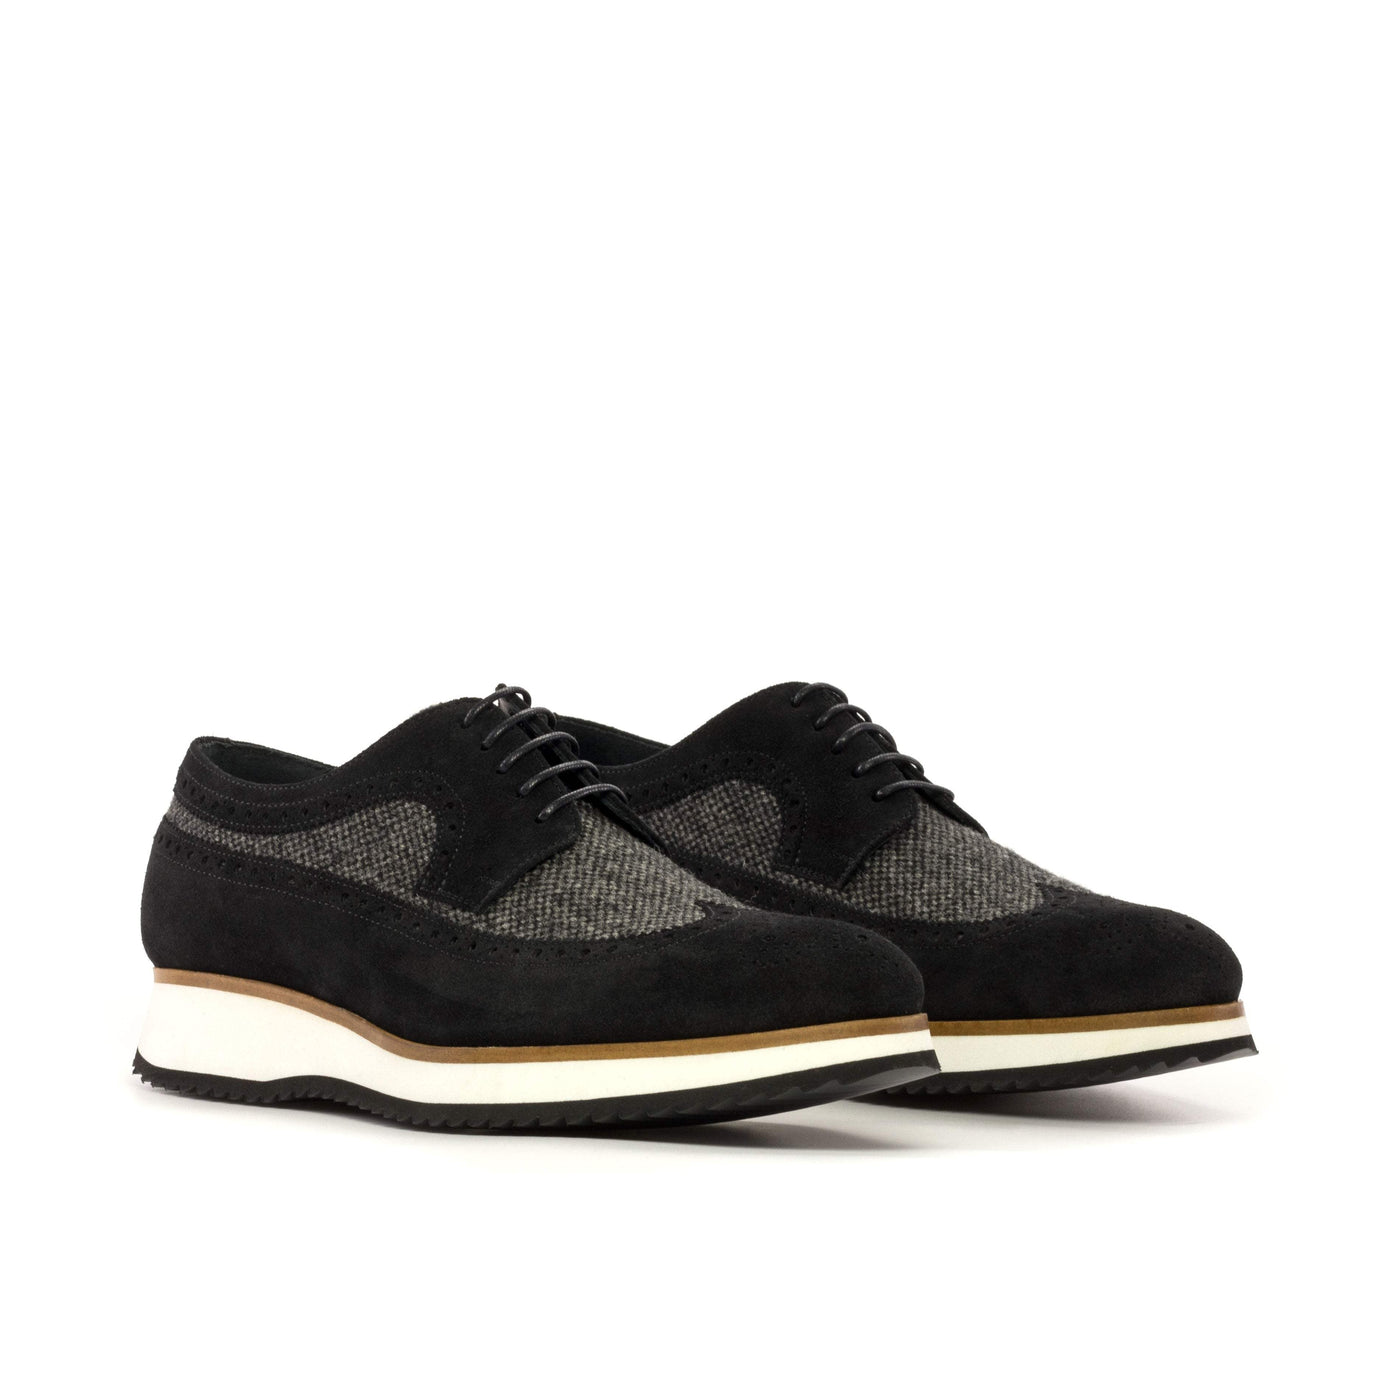 Men's Longwing Blucher Shoes Leather Grey Black 5307 3- MERRIMIUM